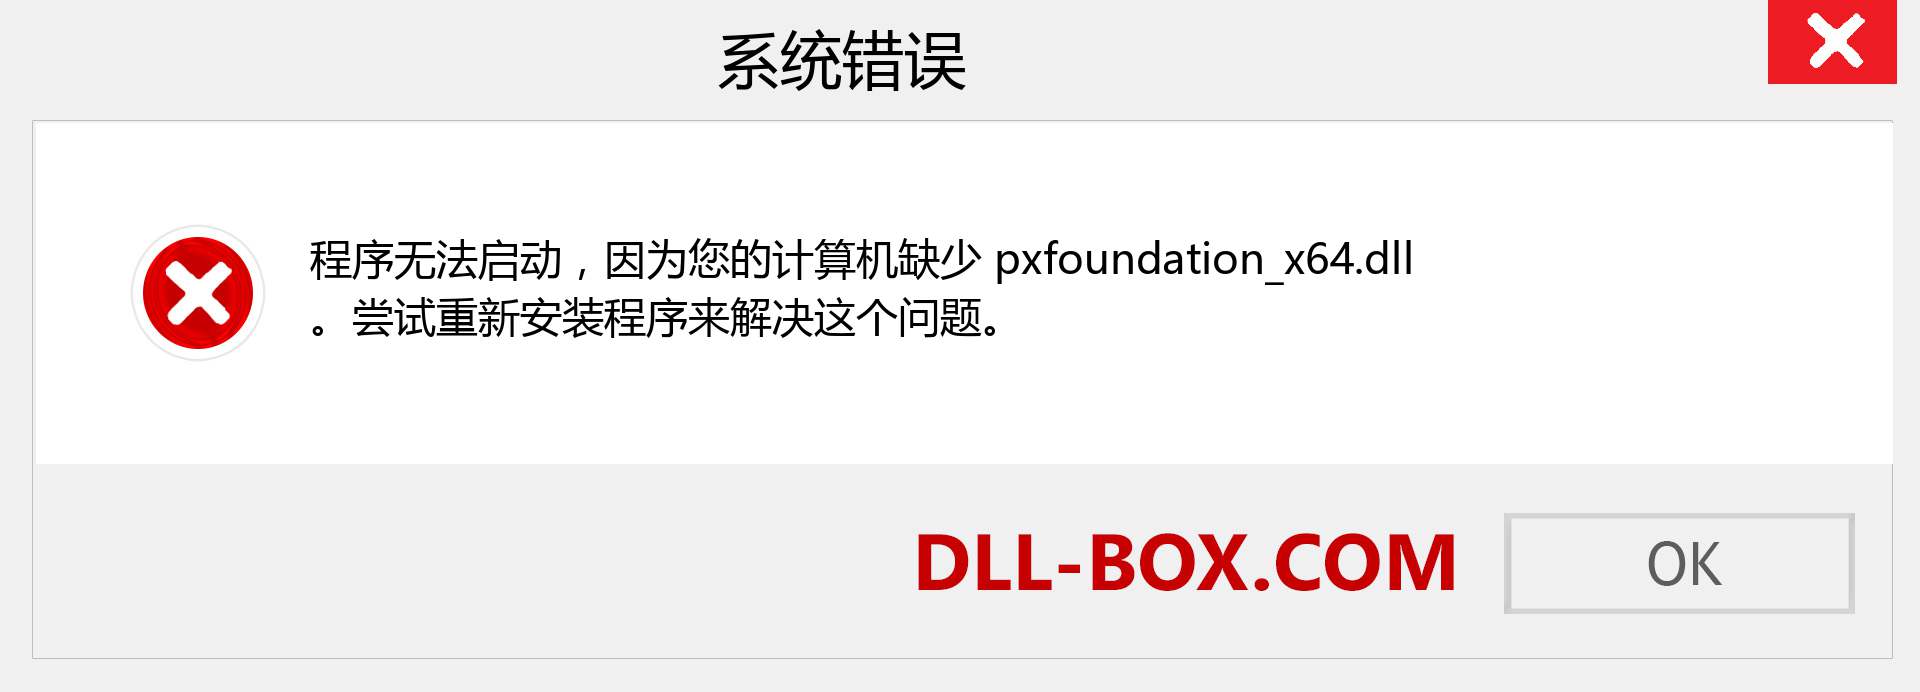 pxfoundation_x64.dll 文件丢失？。 适用于 Windows 7、8、10 的下载 - 修复 Windows、照片、图像上的 pxfoundation_x64 dll 丢失错误